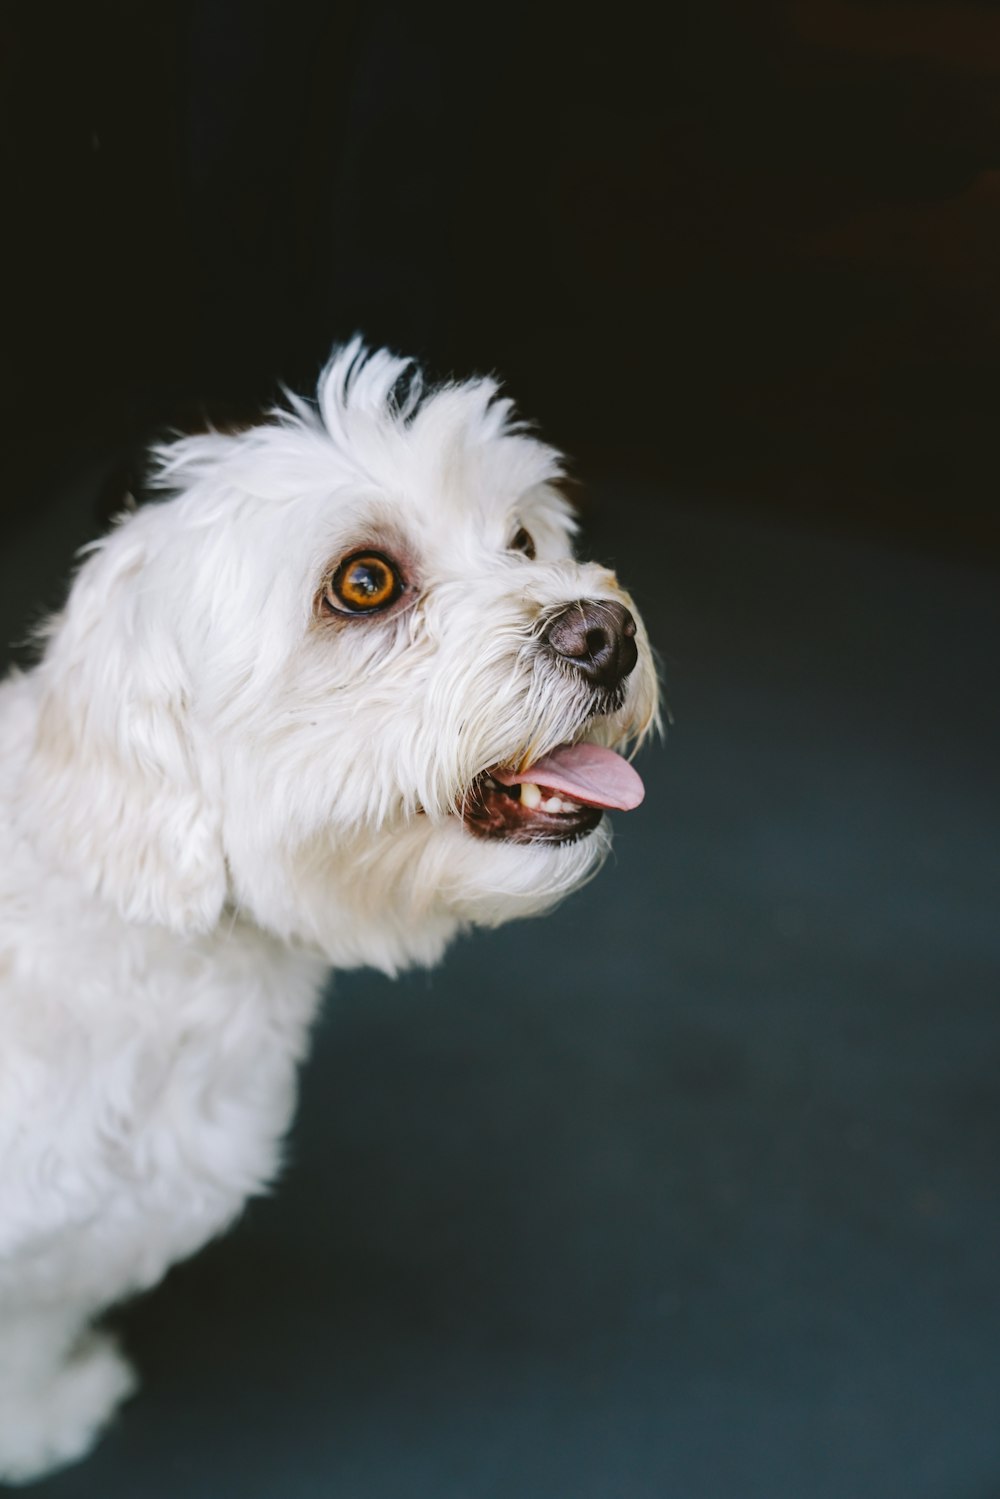 Photographie sélective de mise au point d’un chien blanc montrant la langue